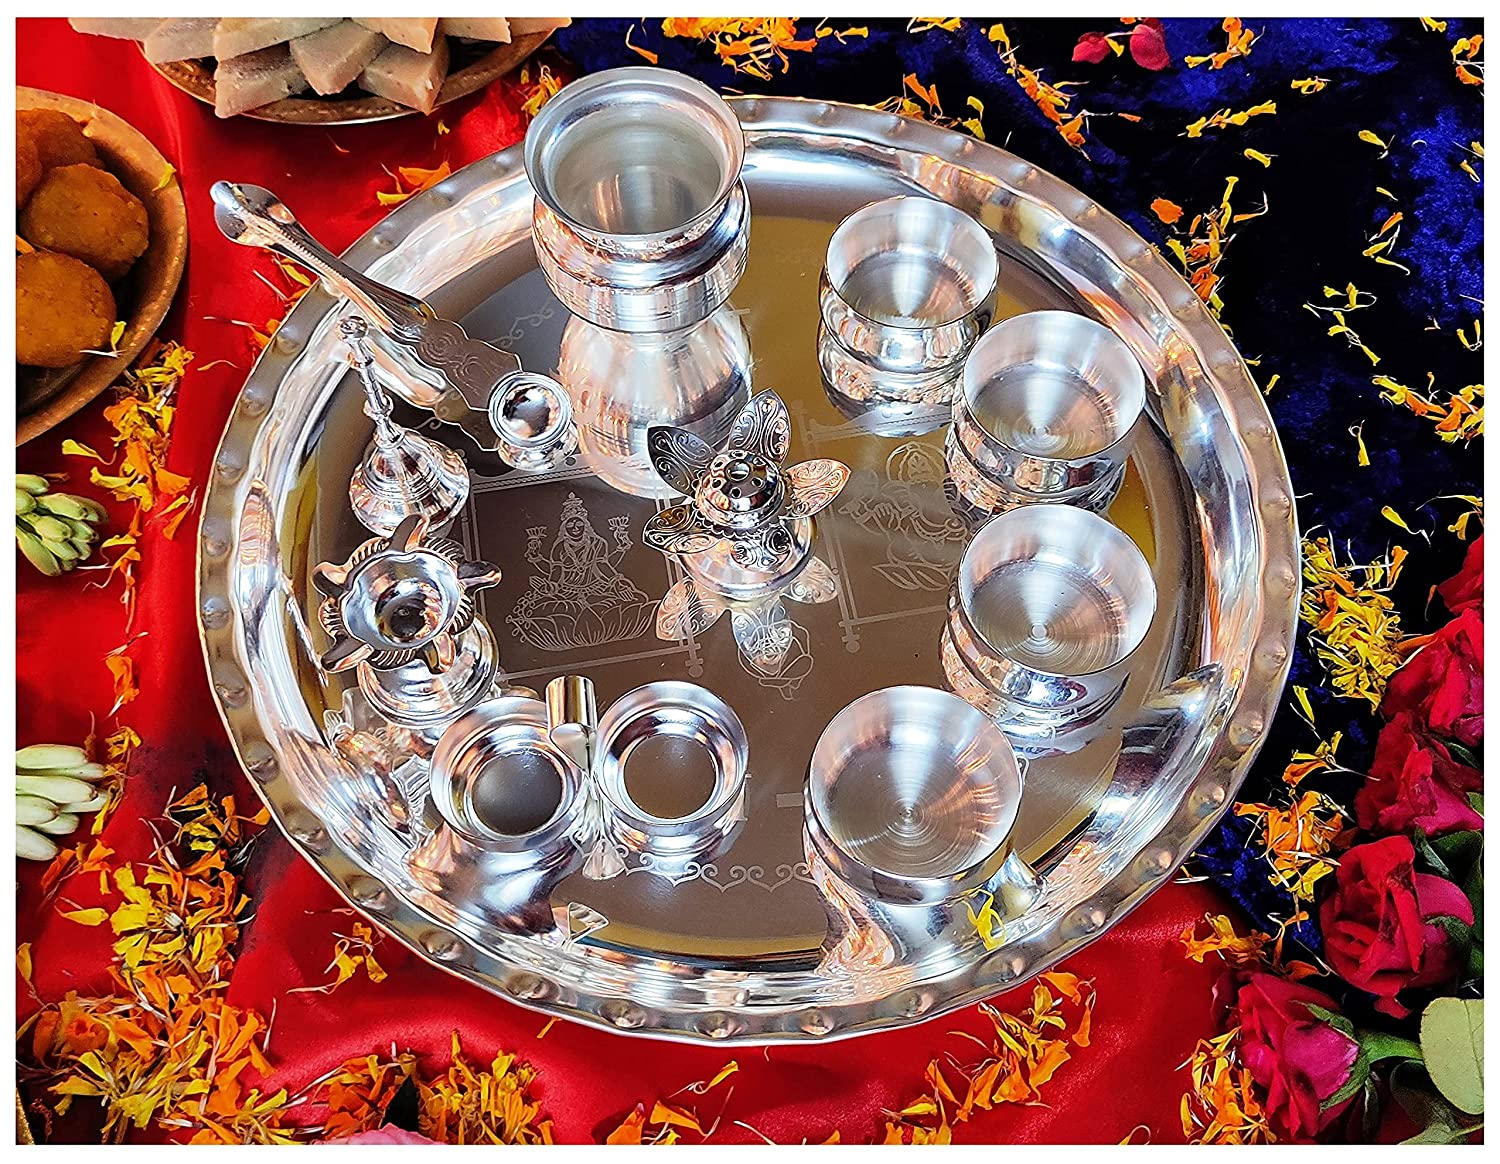 বেঙ্গলেন প্রিমিয়াম সিলভার প্লেটেড পূজা থালি সেট 12 ইঞ্চি উত্সবের জন্য আনুষাঙ্গিক জাতিগত পূজা থালি সেট উপহার বাড়ি, মন্দির, অফিস, বিবাহের উপহারের জন্য